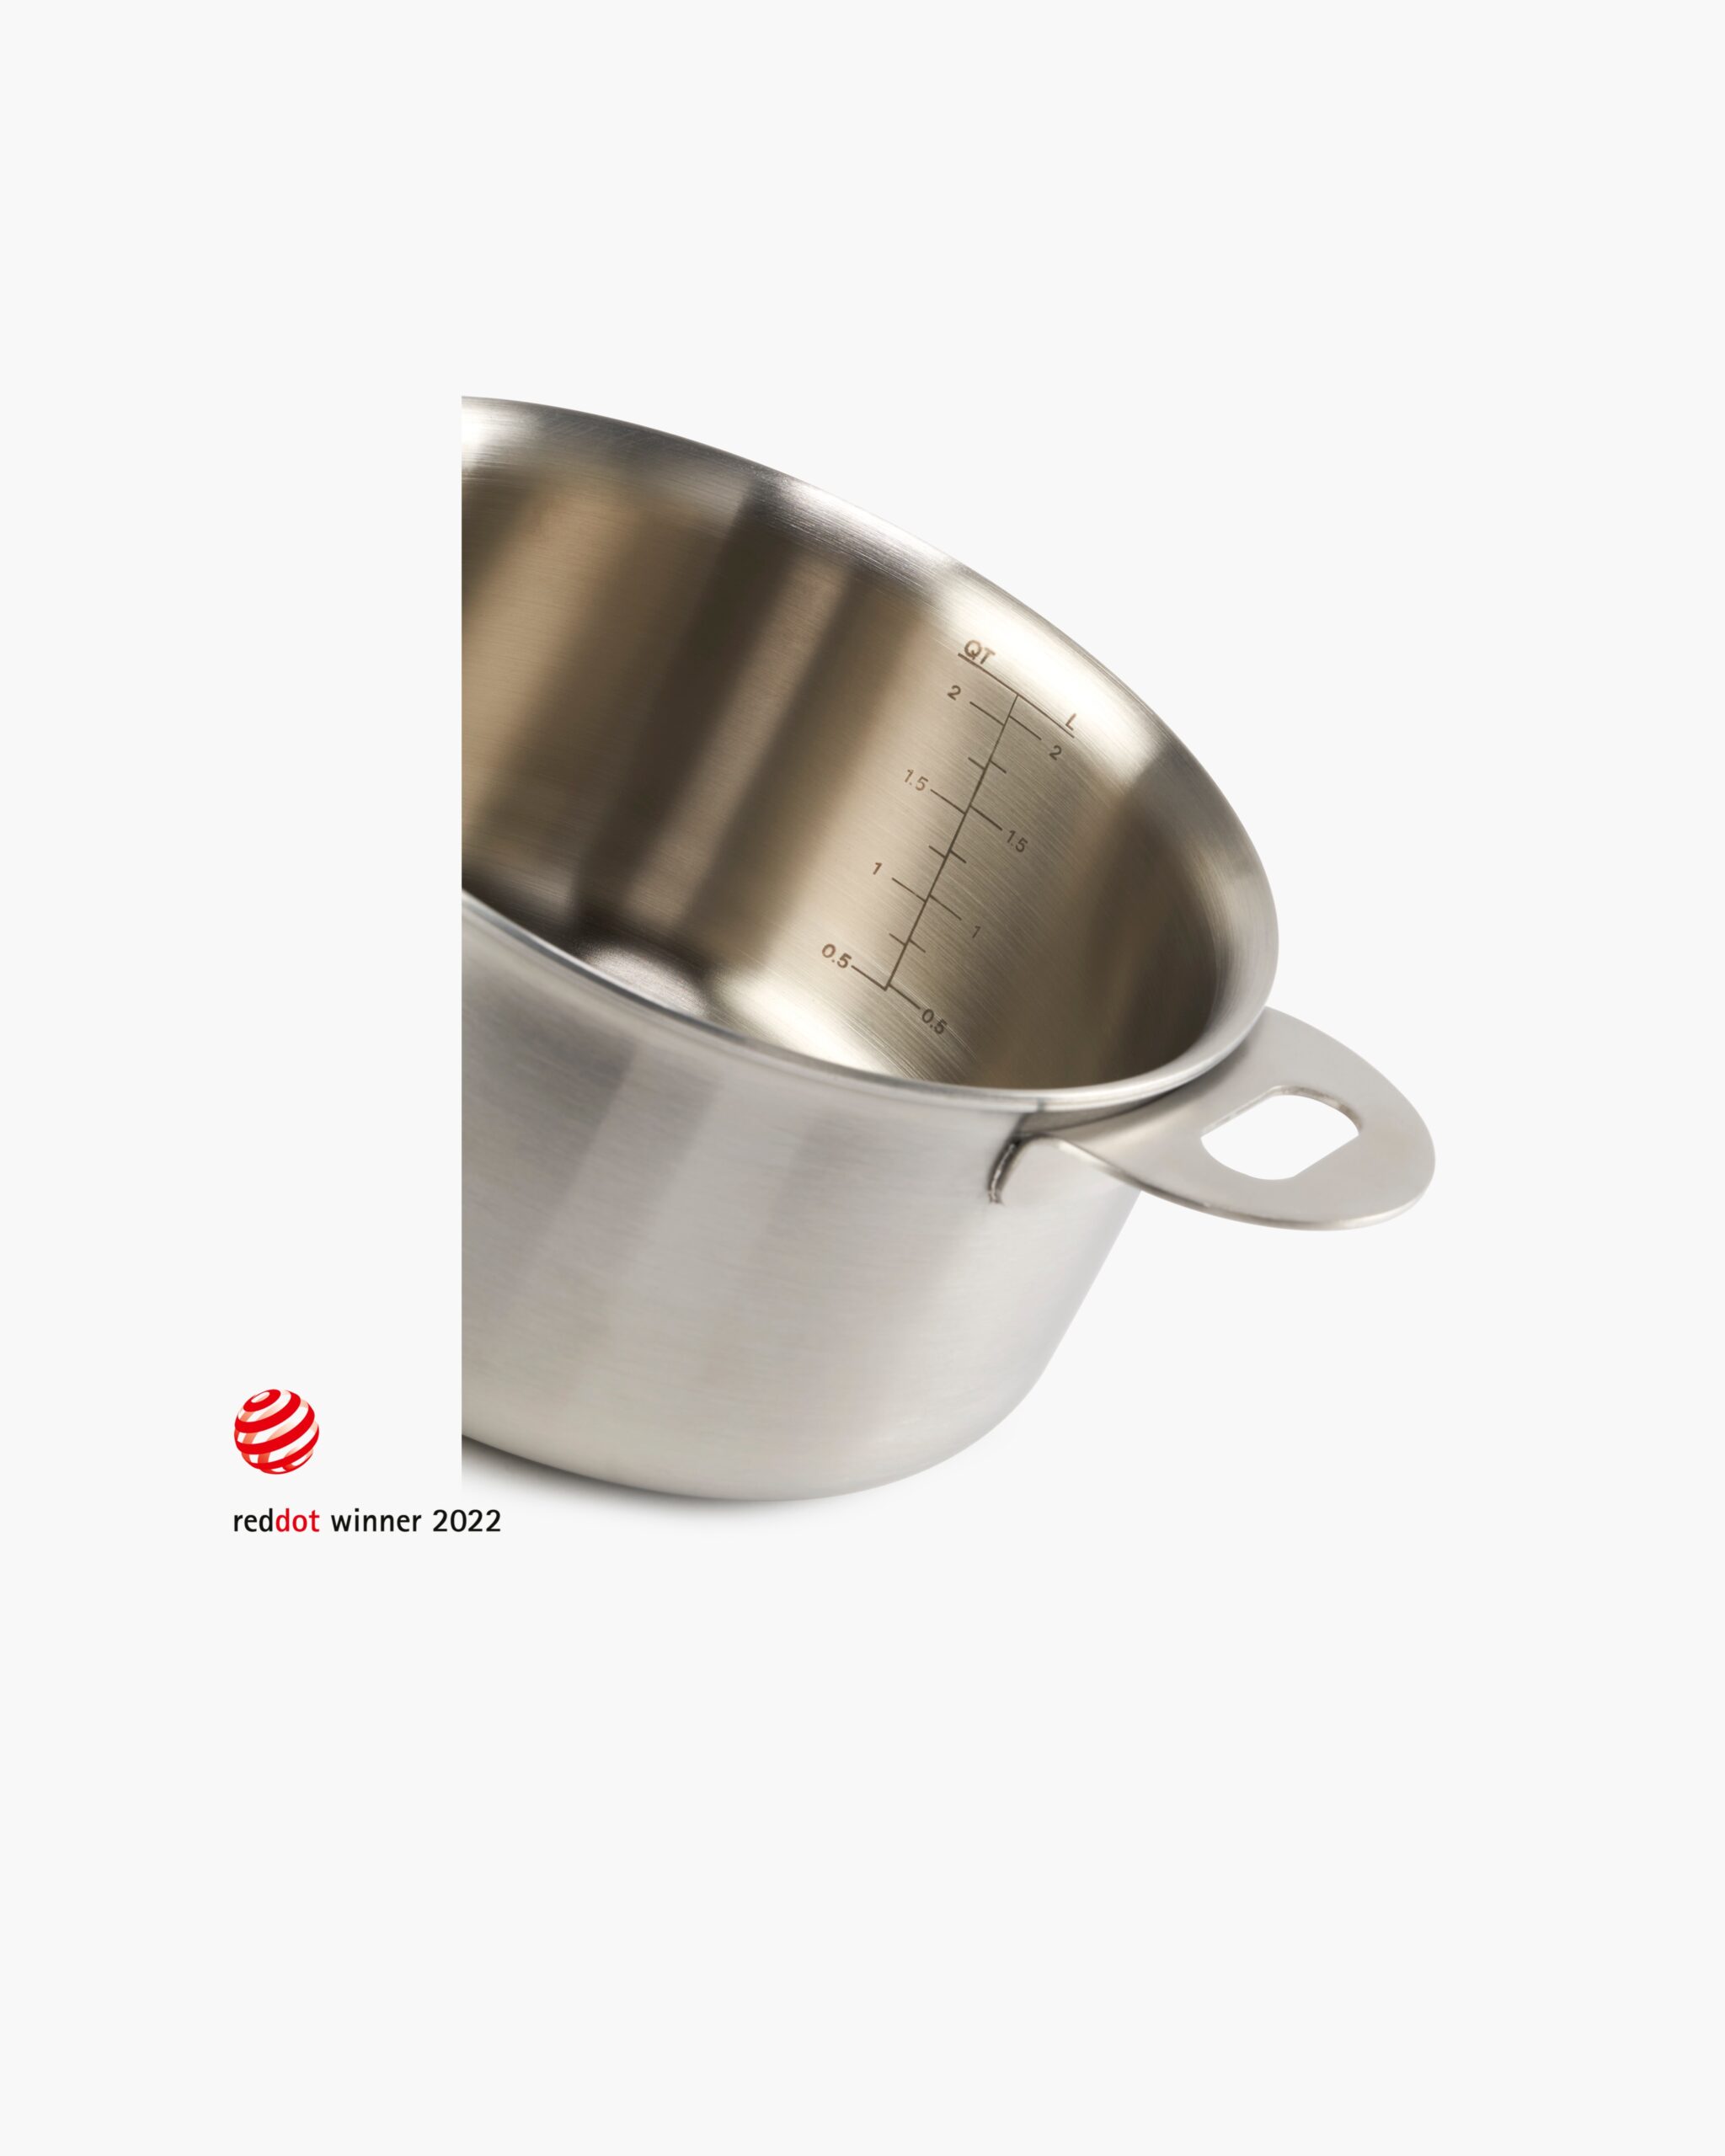 ENSEMBL Stackware Small Saucepan Cookware Stainless Steel Red Dot Design Award Winning.